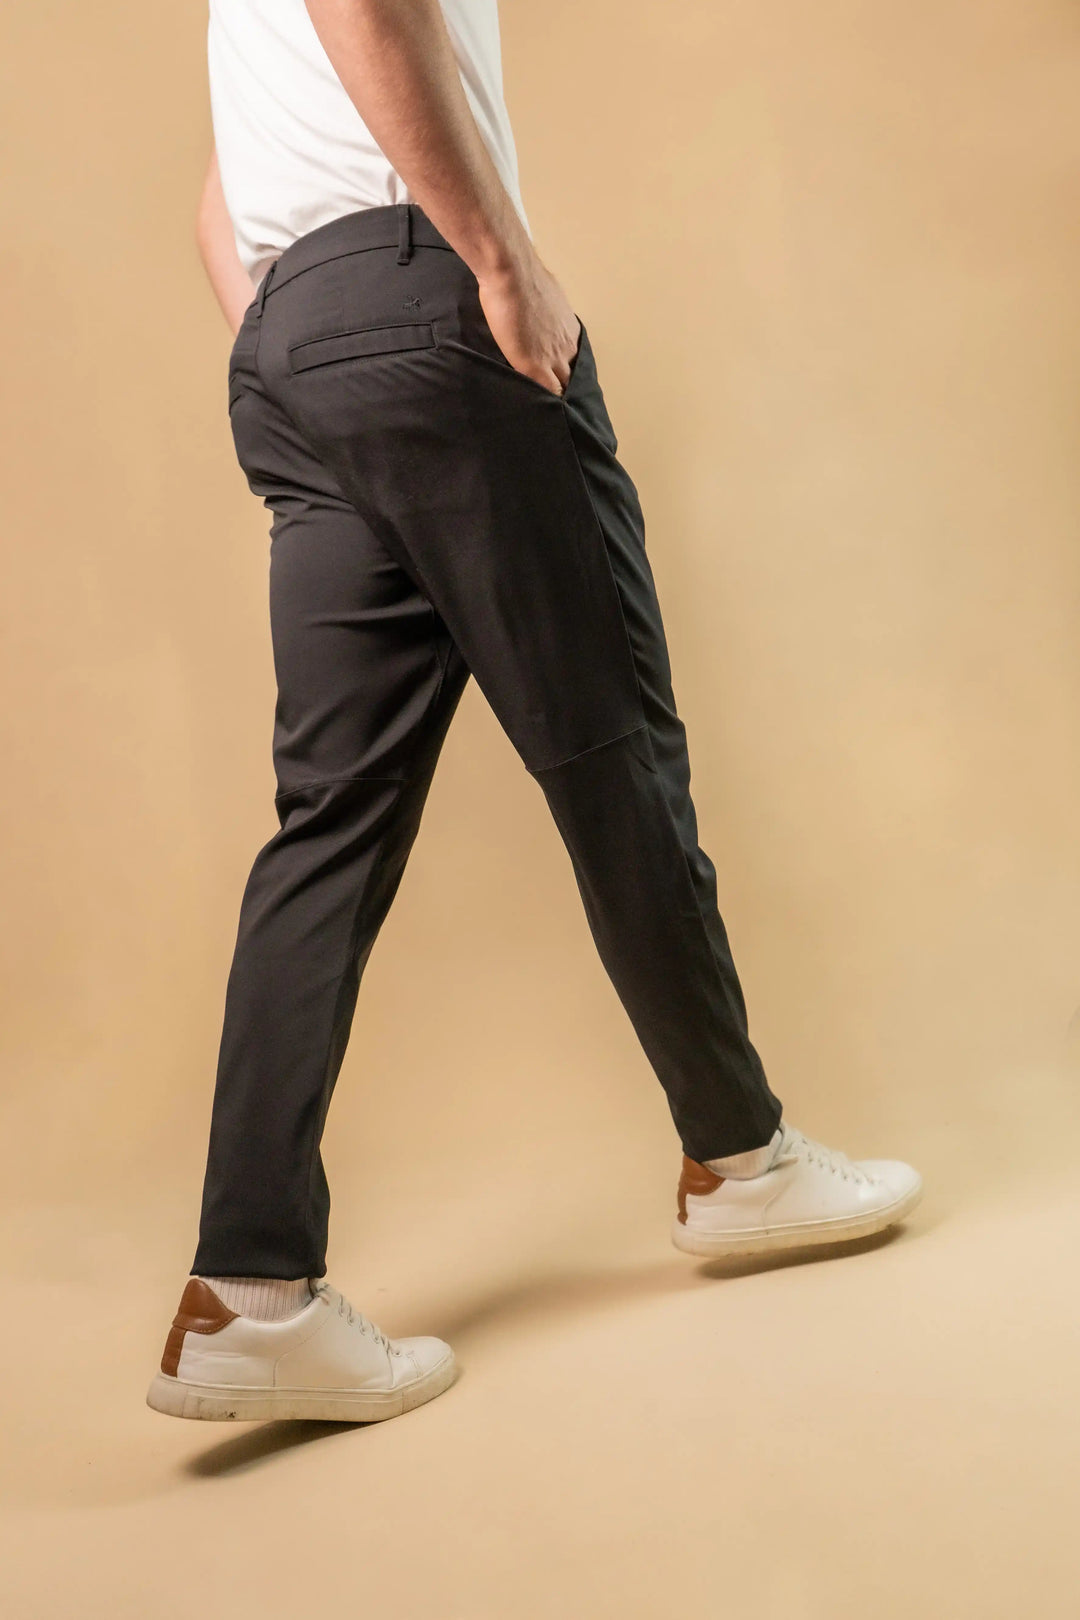 Pants Mujer Cómodo Tipo Jogger Moda Original Calidad Premium